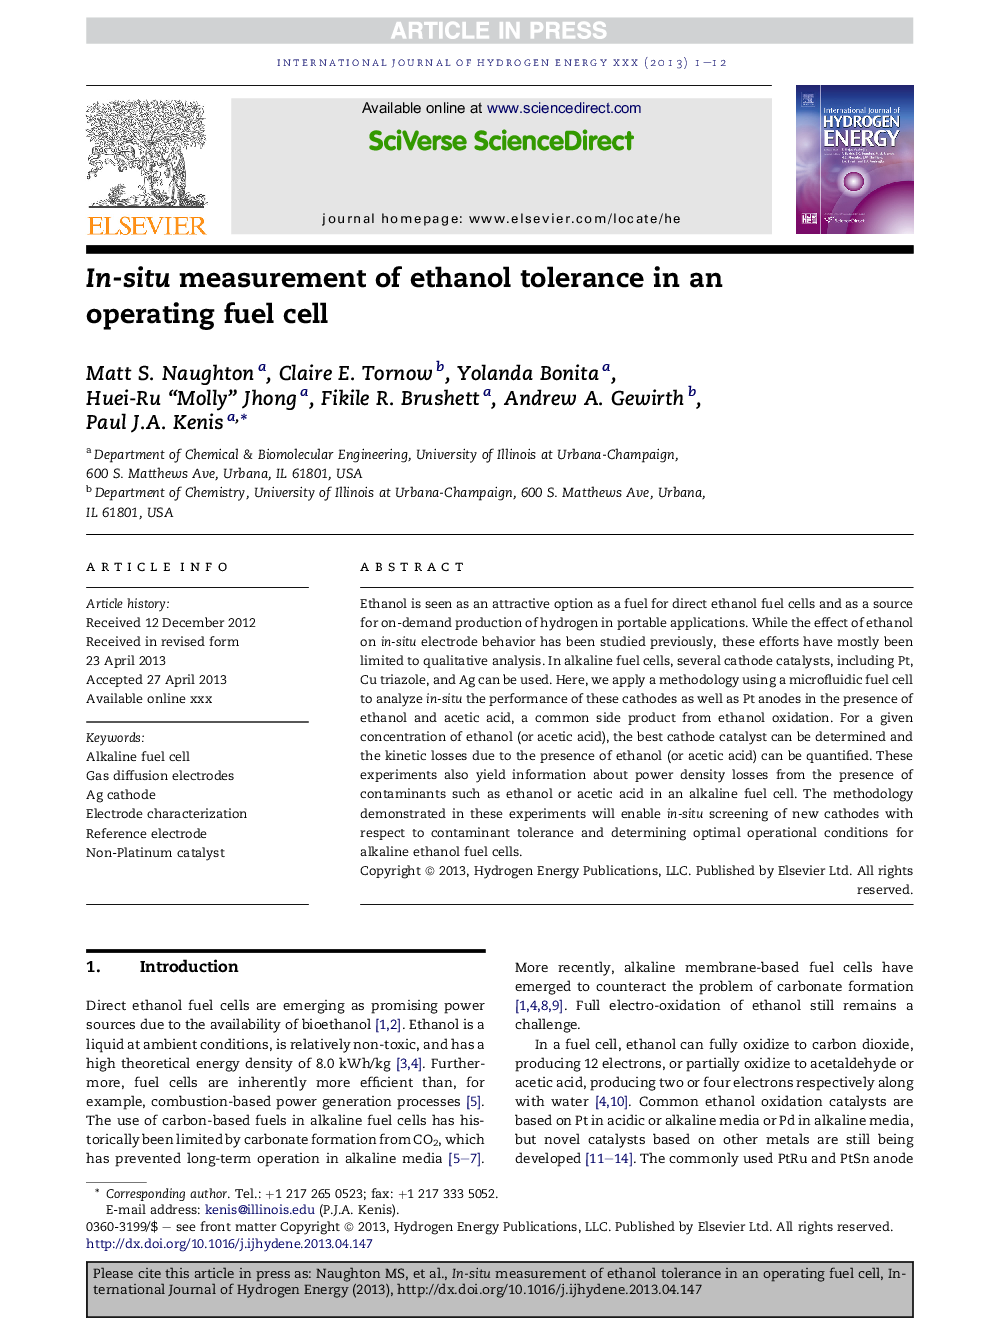 اندازه گیری تحمل اتانول درون سلولی در یک سلول سوخت عملیاتی 